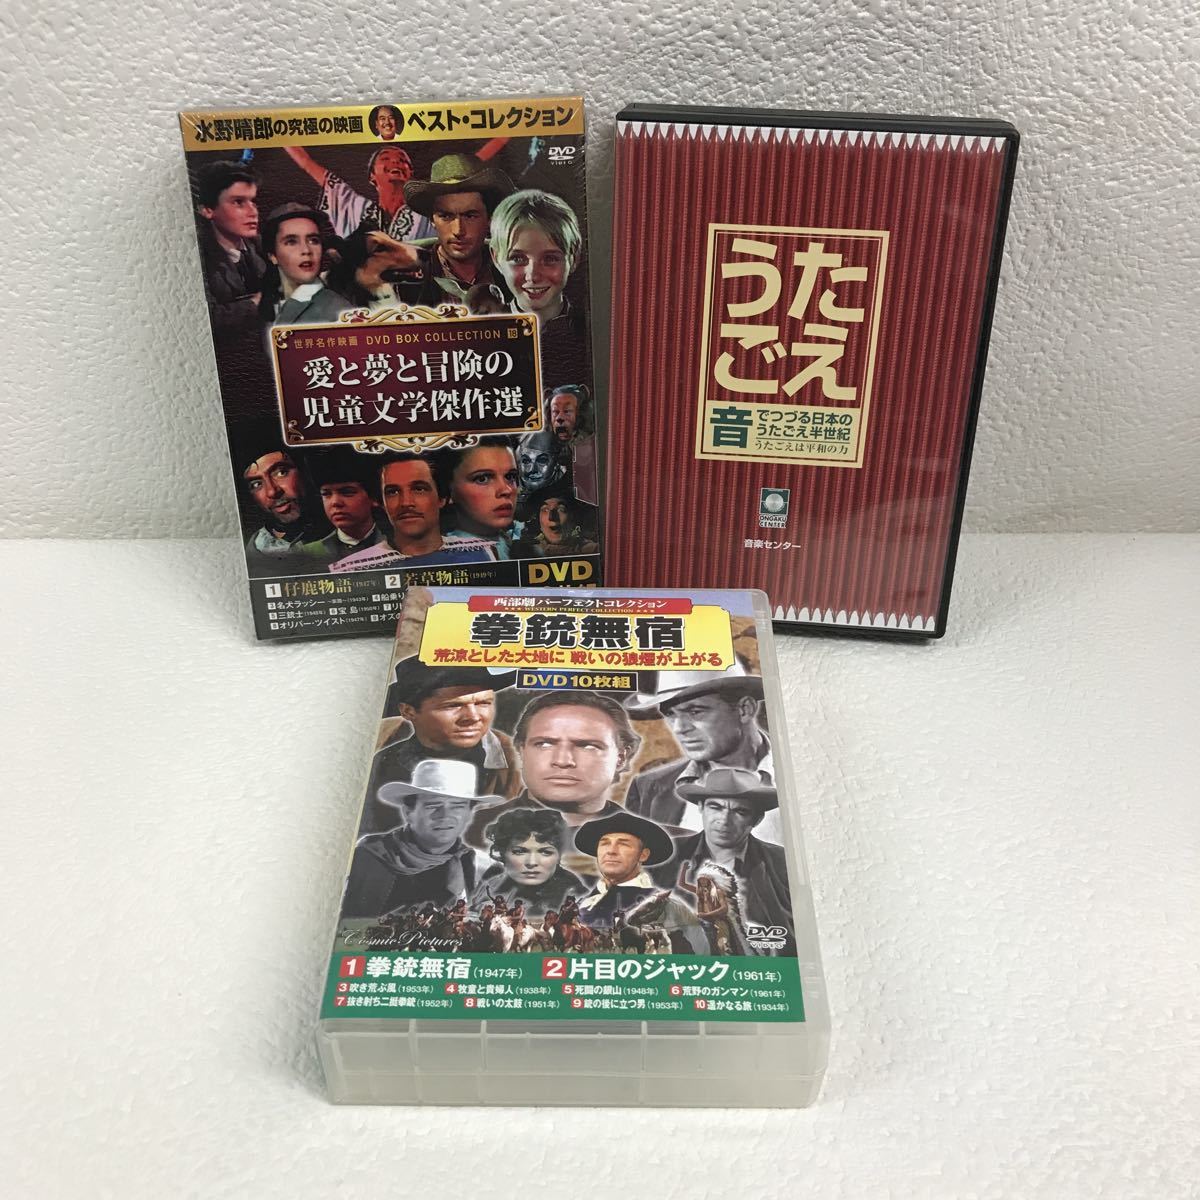 I1207G2F 有り まとめ DVD BOX コレクション 24巻セット 洋画 邦画 大 